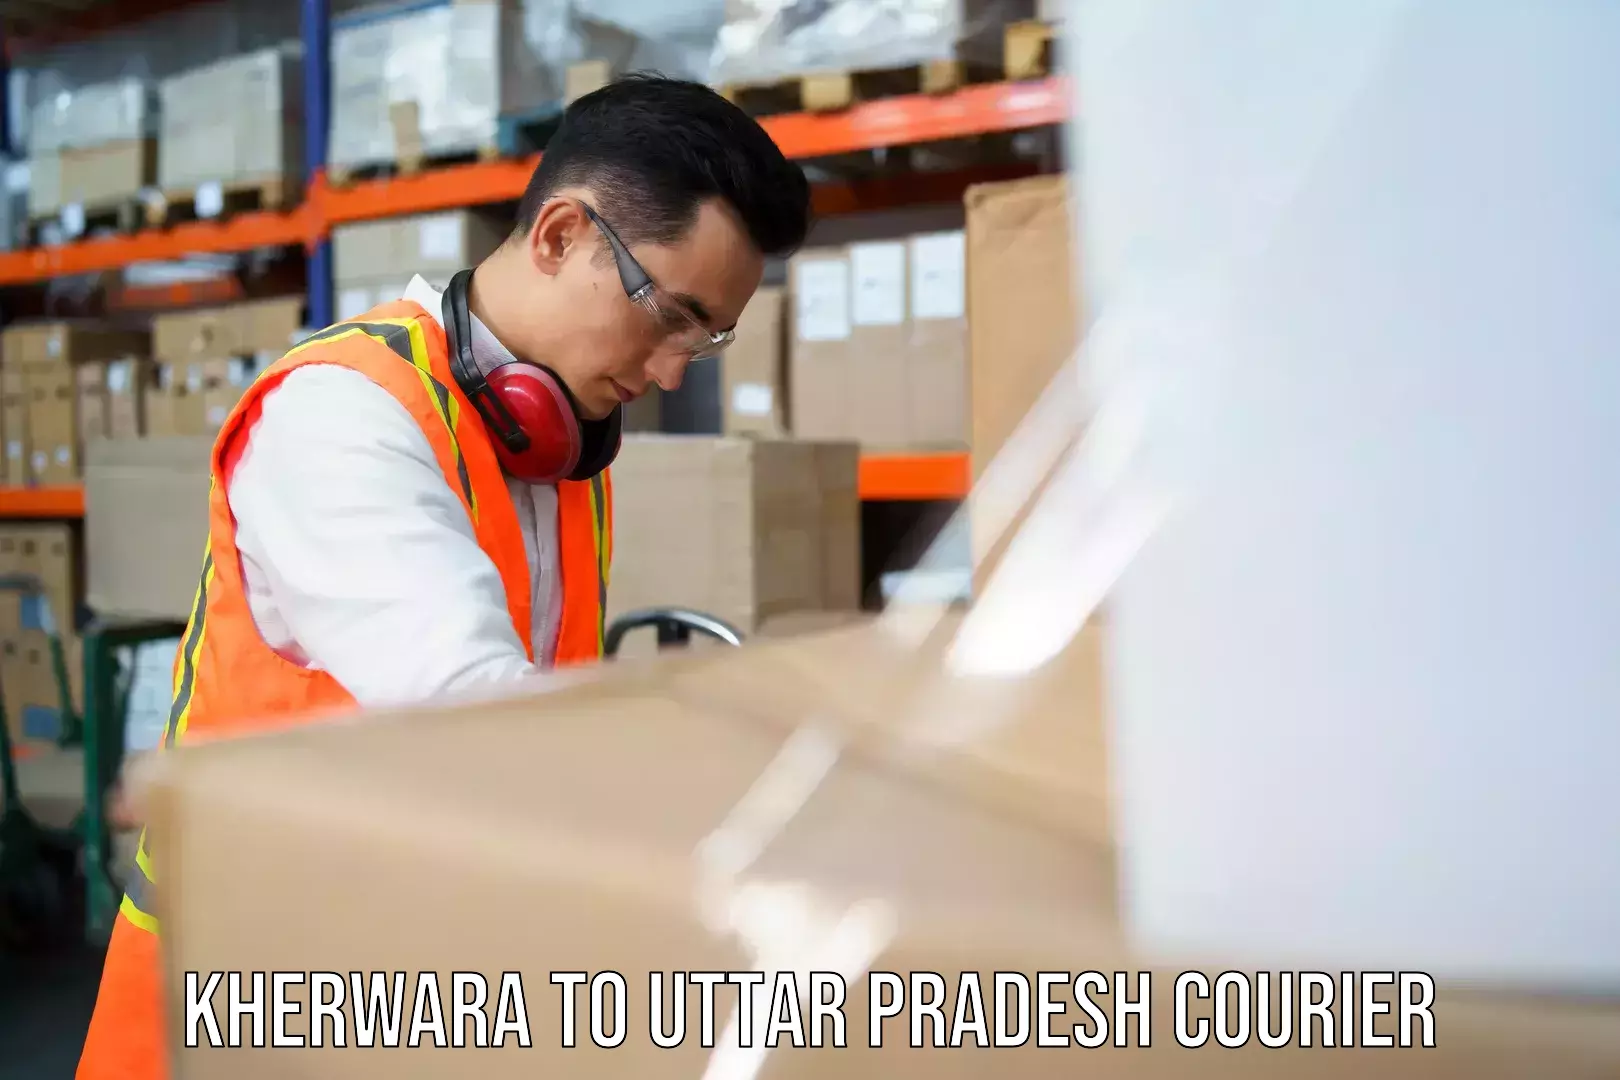 Efficient logistics management Kherwara to Hathras